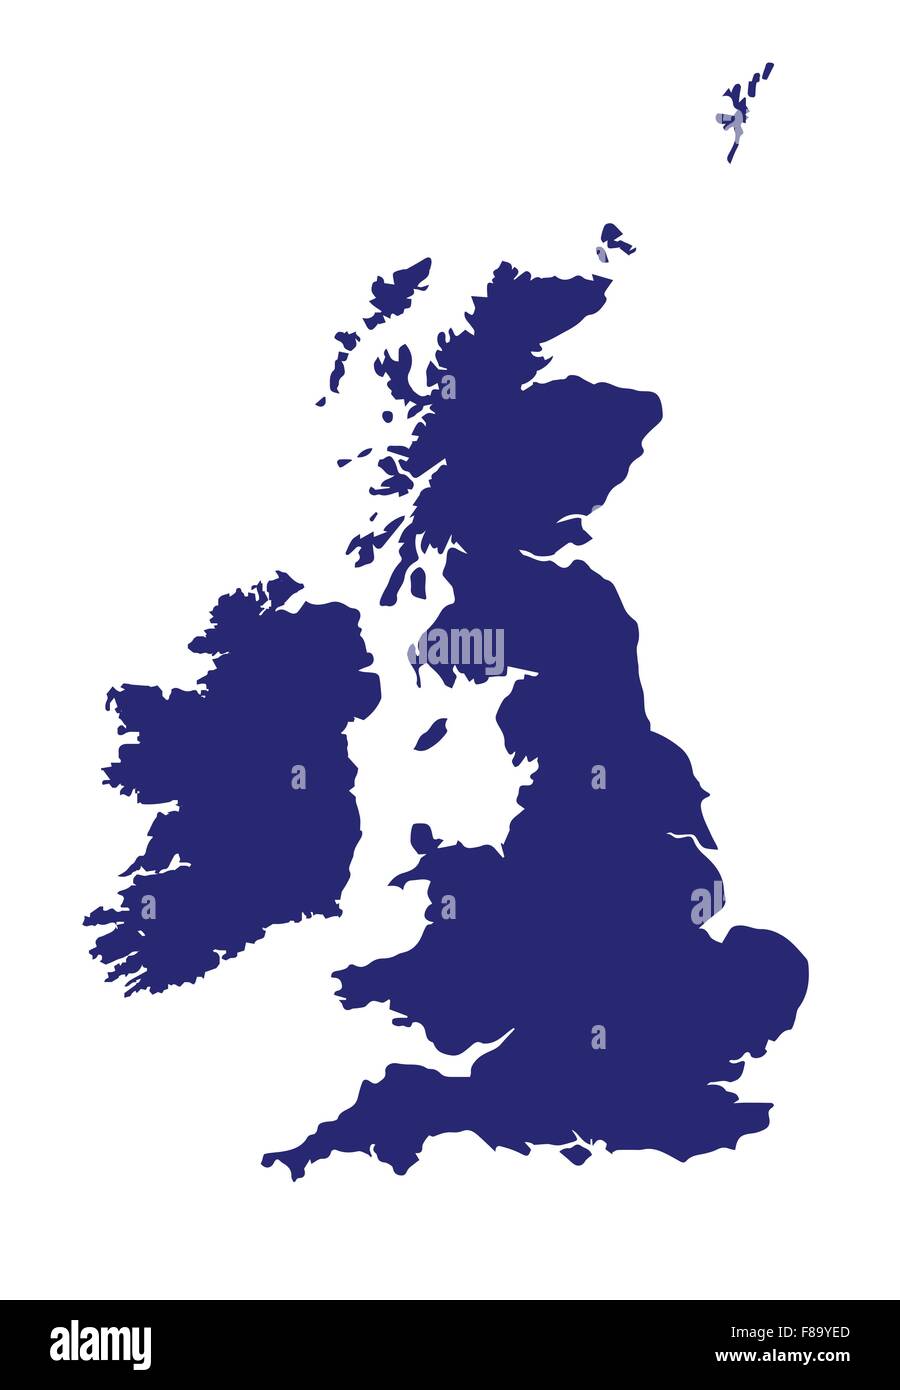 Una silhouette di Regno Unito e Irlanda su uno sfondo bianco Illustrazione Vettoriale